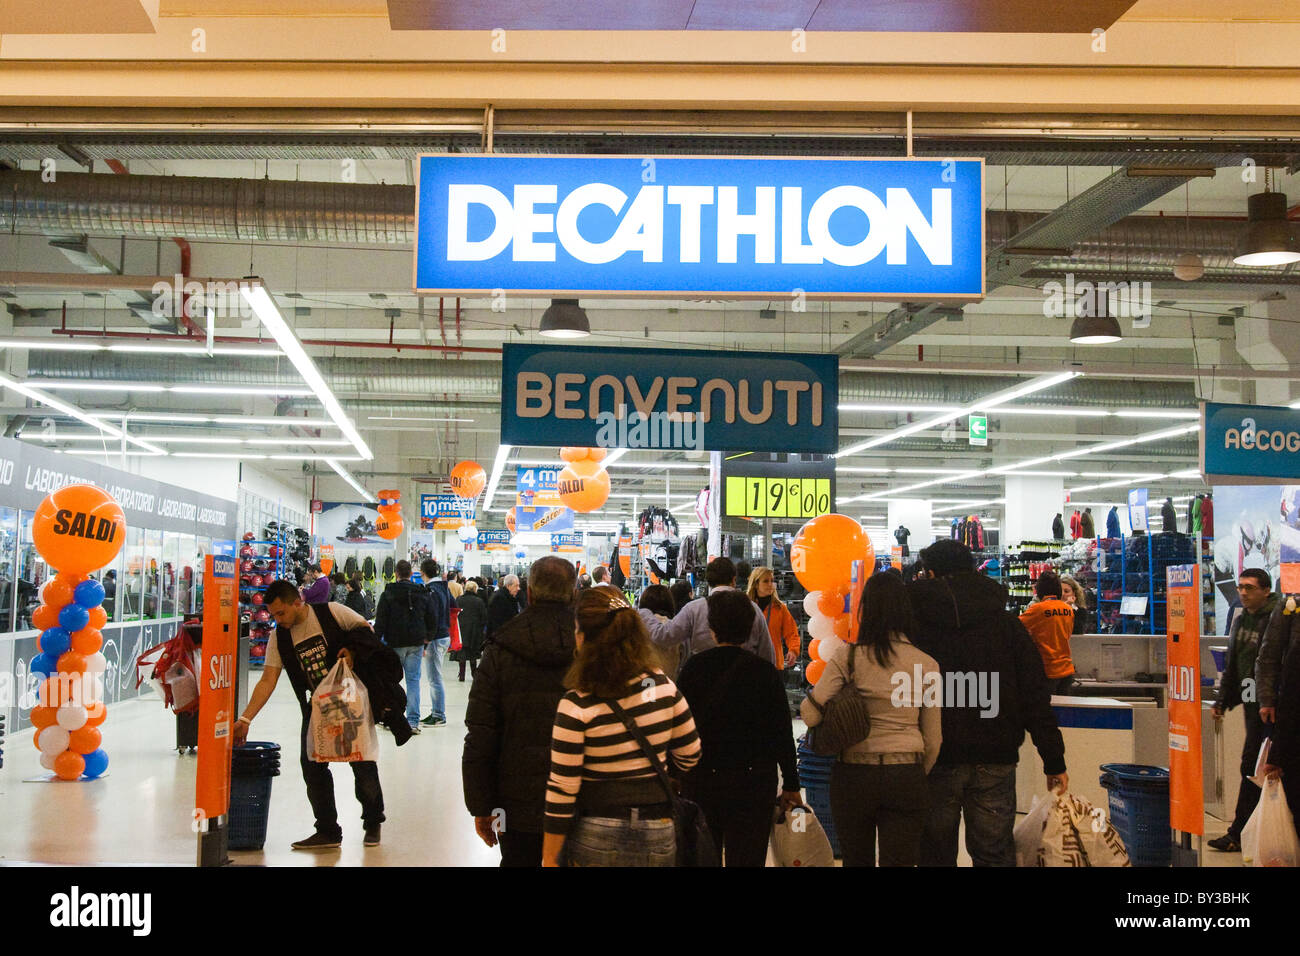 Decathlon' cartel entrée sports et sportswear company store à Rome Italie  Europe, les gens foule sur la vente Photo Stock - Alamy